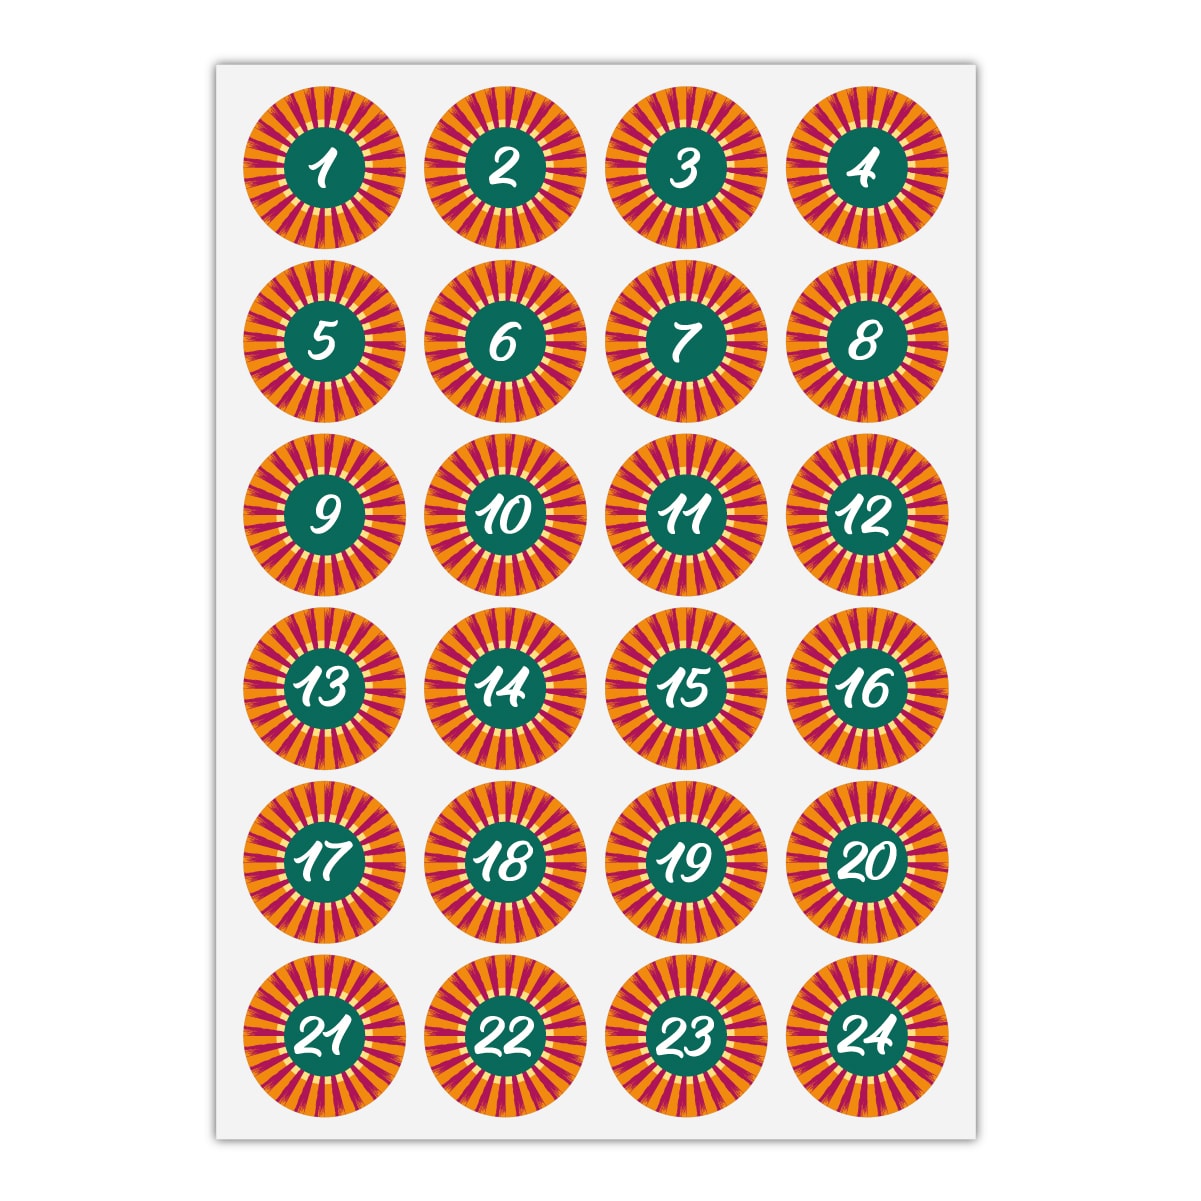 Kartenkaufrausch Sticker in orange: schicke Advents Aufkleber